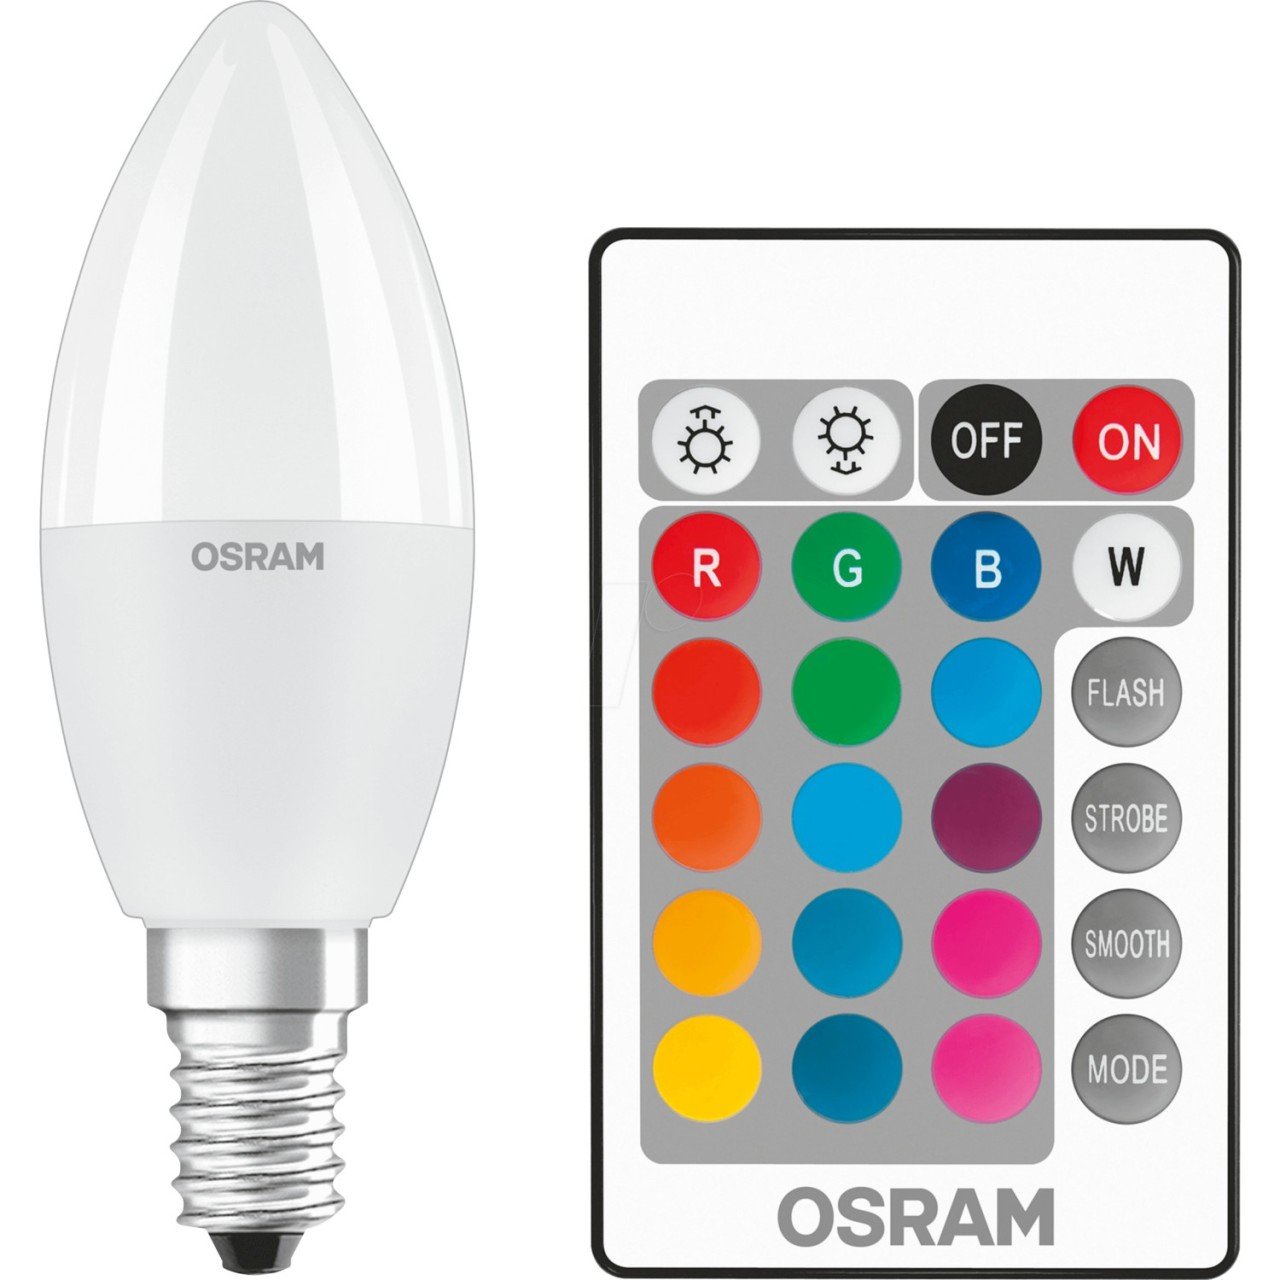 OSRAM - Uzaktan Kumandalı RGB 5.5W Dimmable E14 Duy Renk Değiştiren Uzaktan Kumandalı Led Ampul